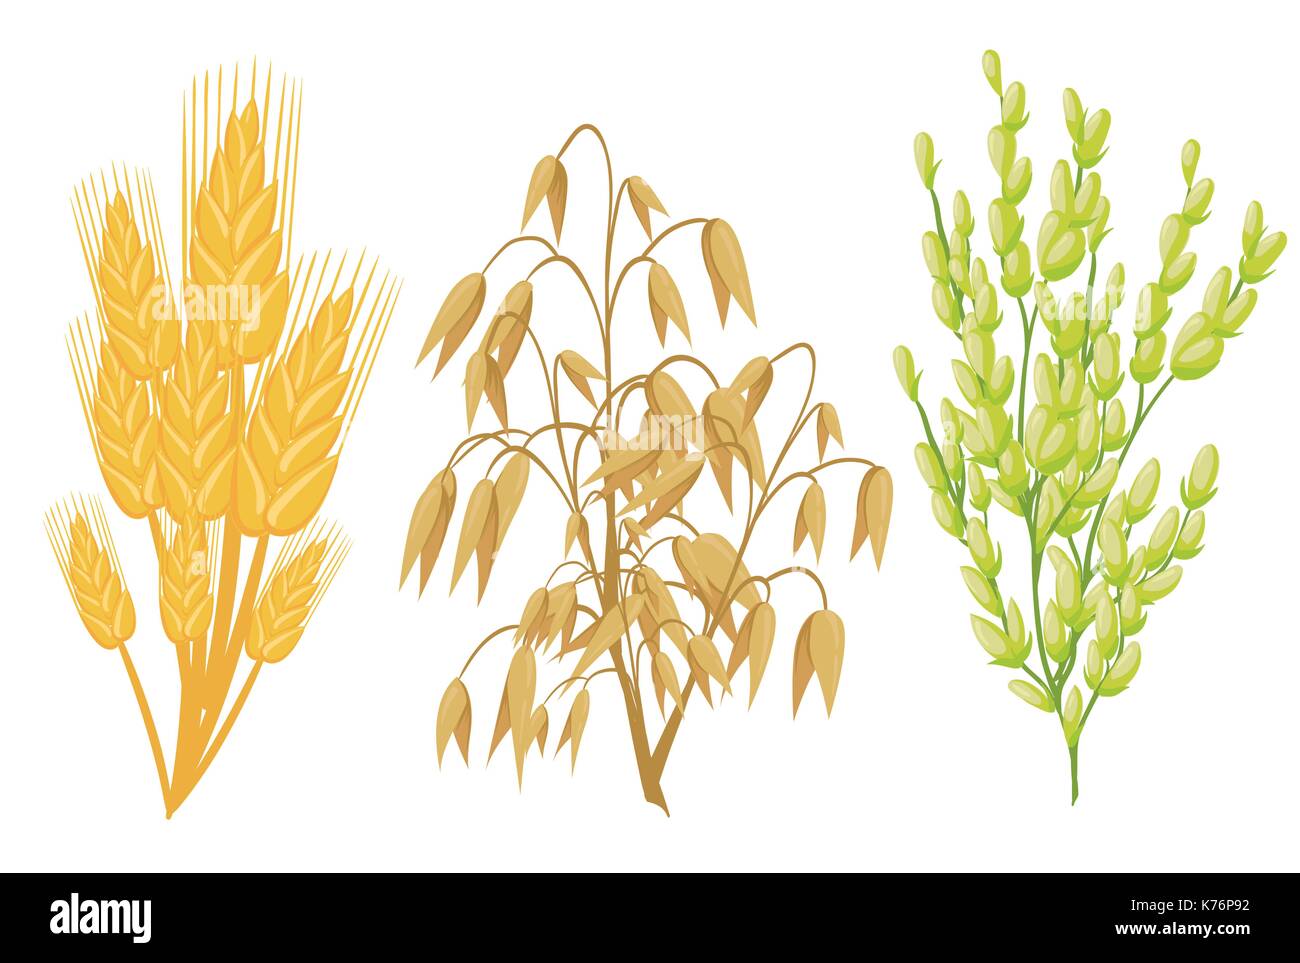 Getreide Symbole von Getreide Pflanzen. Vektor Ohren Weizen und Roggen, Buchweizen Samen und Hafer oder Gerste, Hirse und Reis Garbe. Isolierte Landwirtschaft Maiskolben und l Stock Vektor